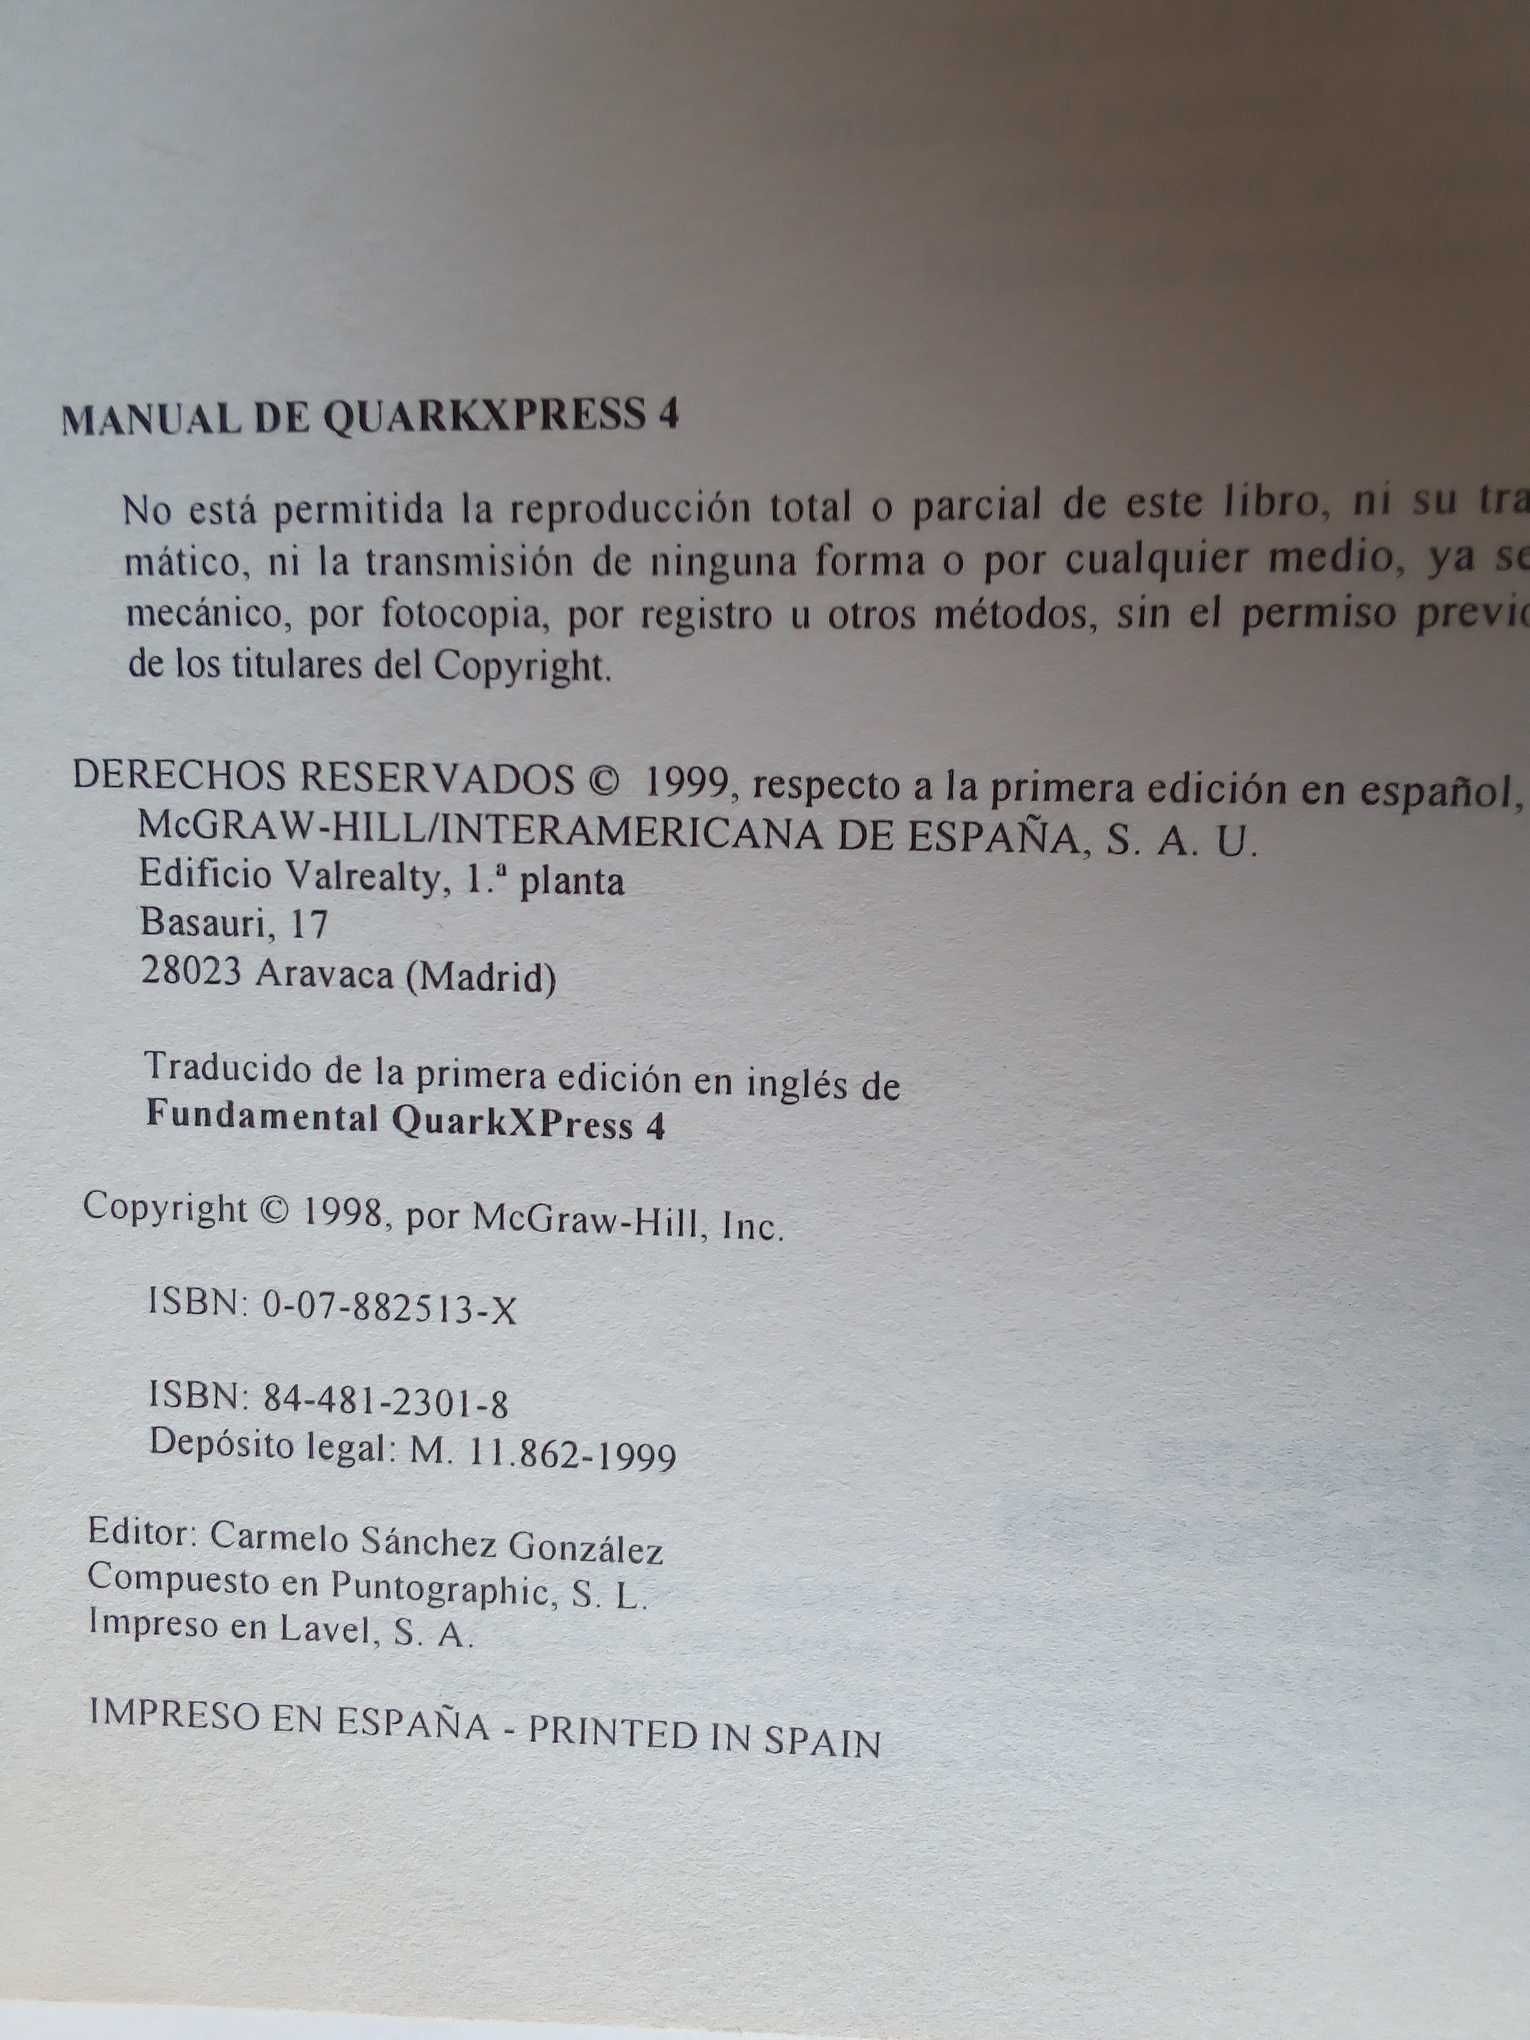 Manual de QuarkXPress 4, de Steve Bain